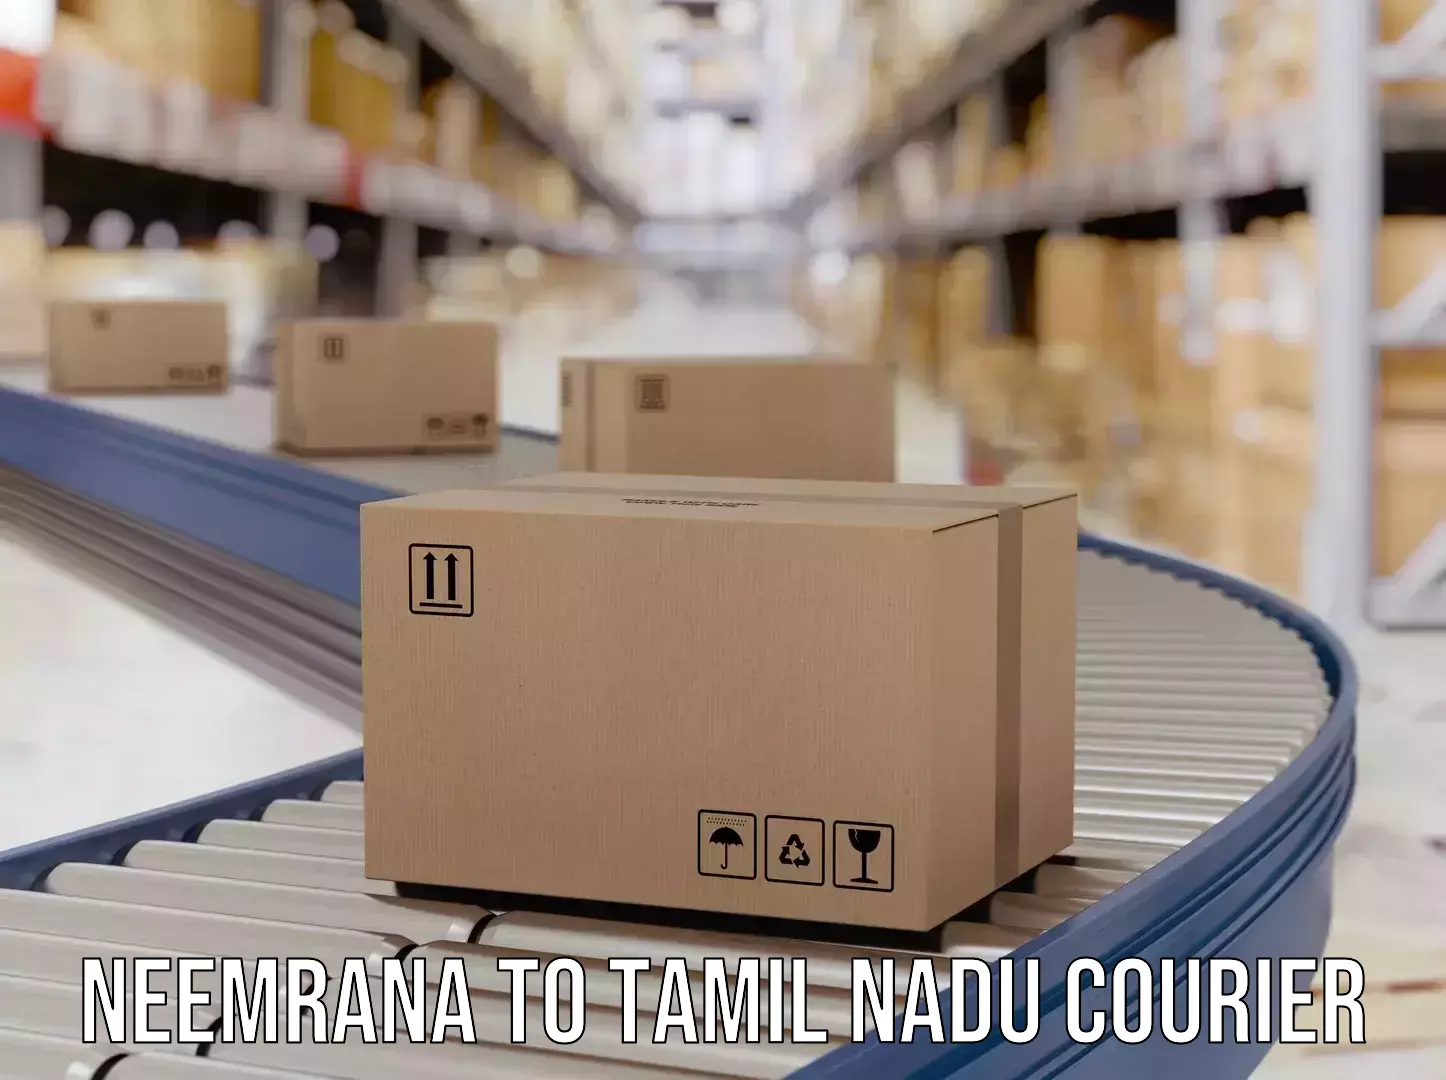 Personalized courier solutions Neemrana to Amrita Vishwa Vidyapeetham Coimbatore